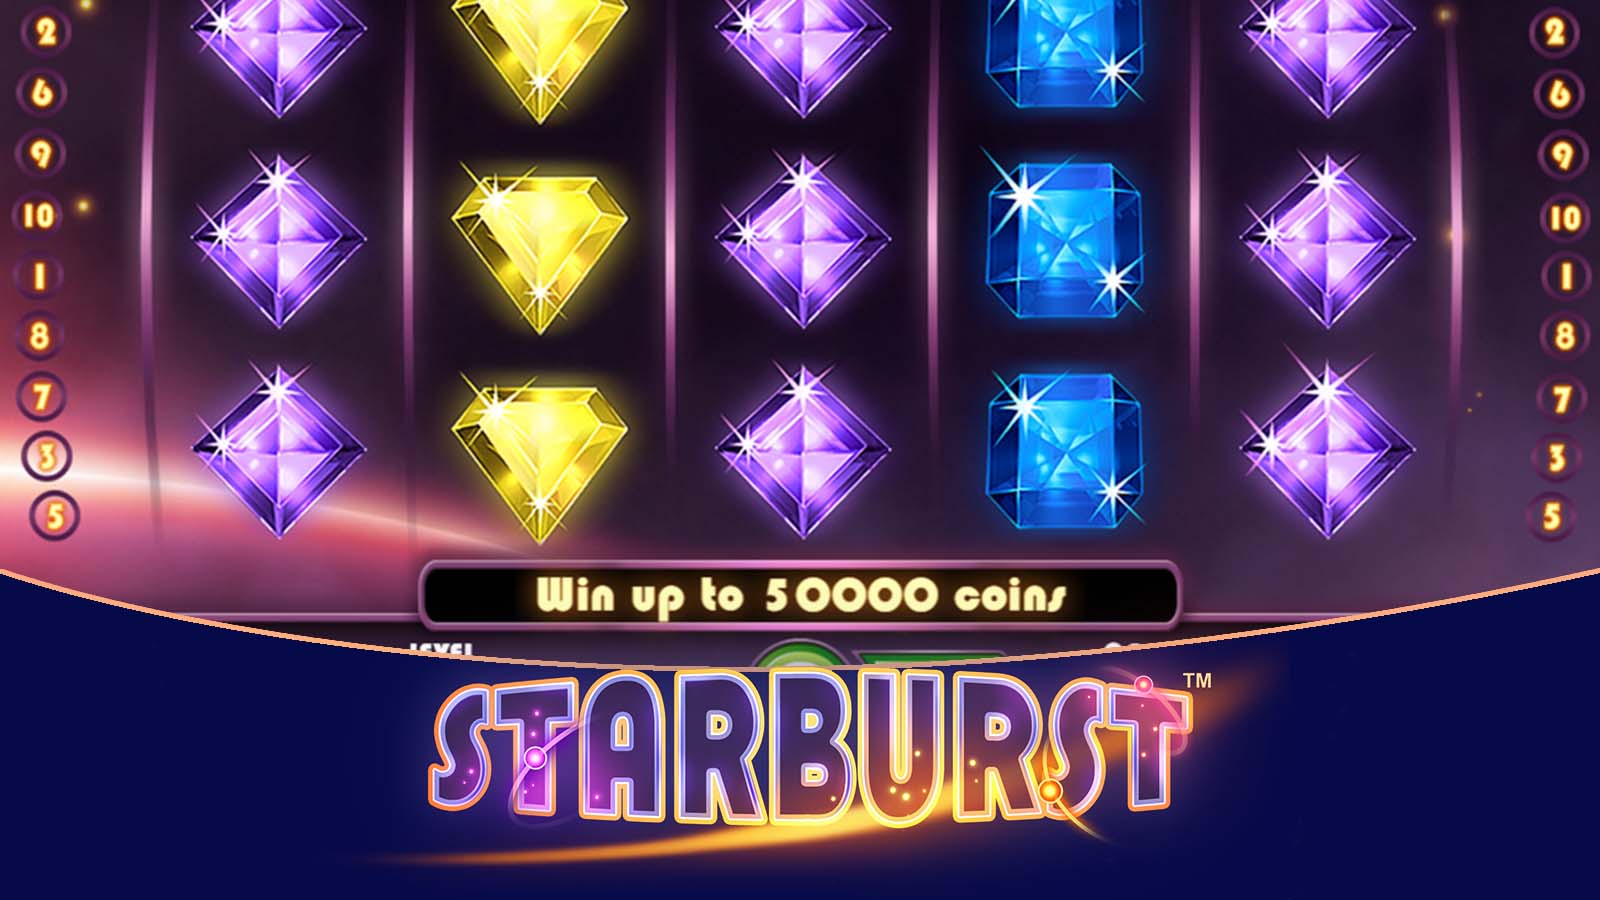 Best Slots For Free Spins No Deposit Bonuses: Starburst